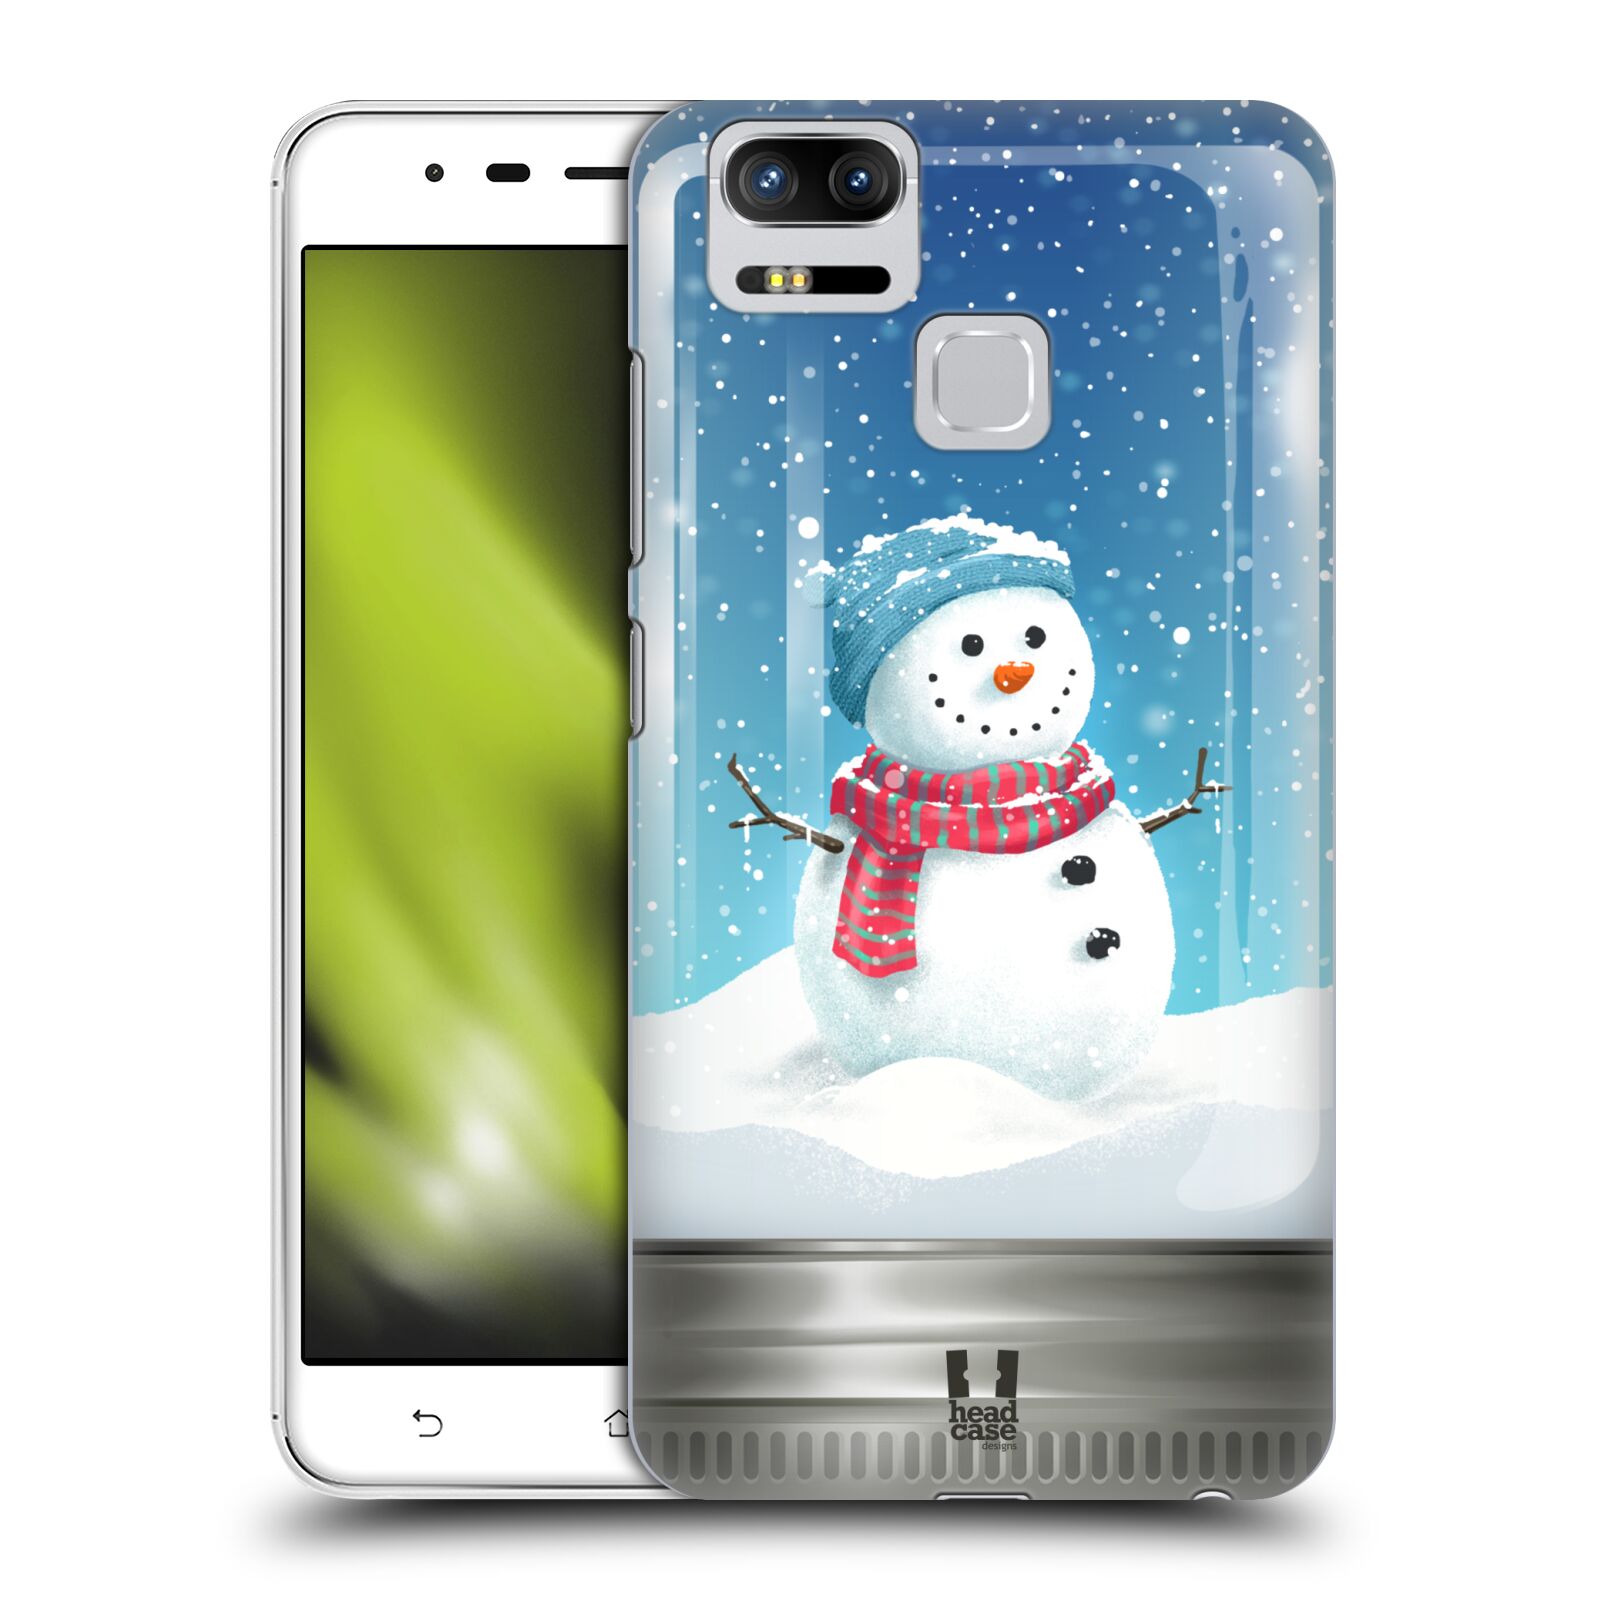 HEAD CASE plastový obal na mobil Asus Zenfone 3 Zoom ZE553KL vzor Vánoce v těžítku SNĚHULÁK